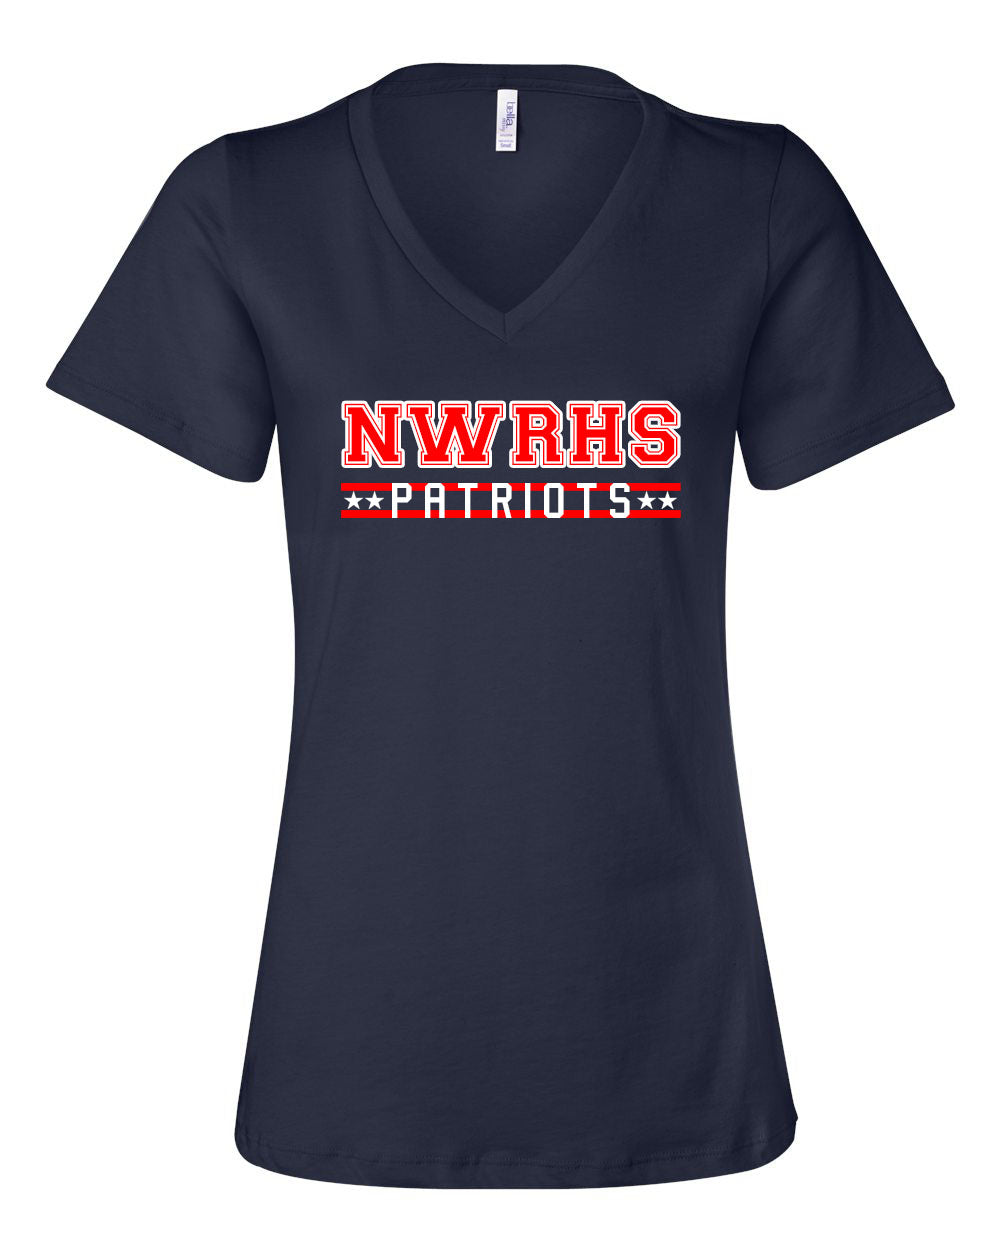 NWRHS Patriots V-neck T-shirt